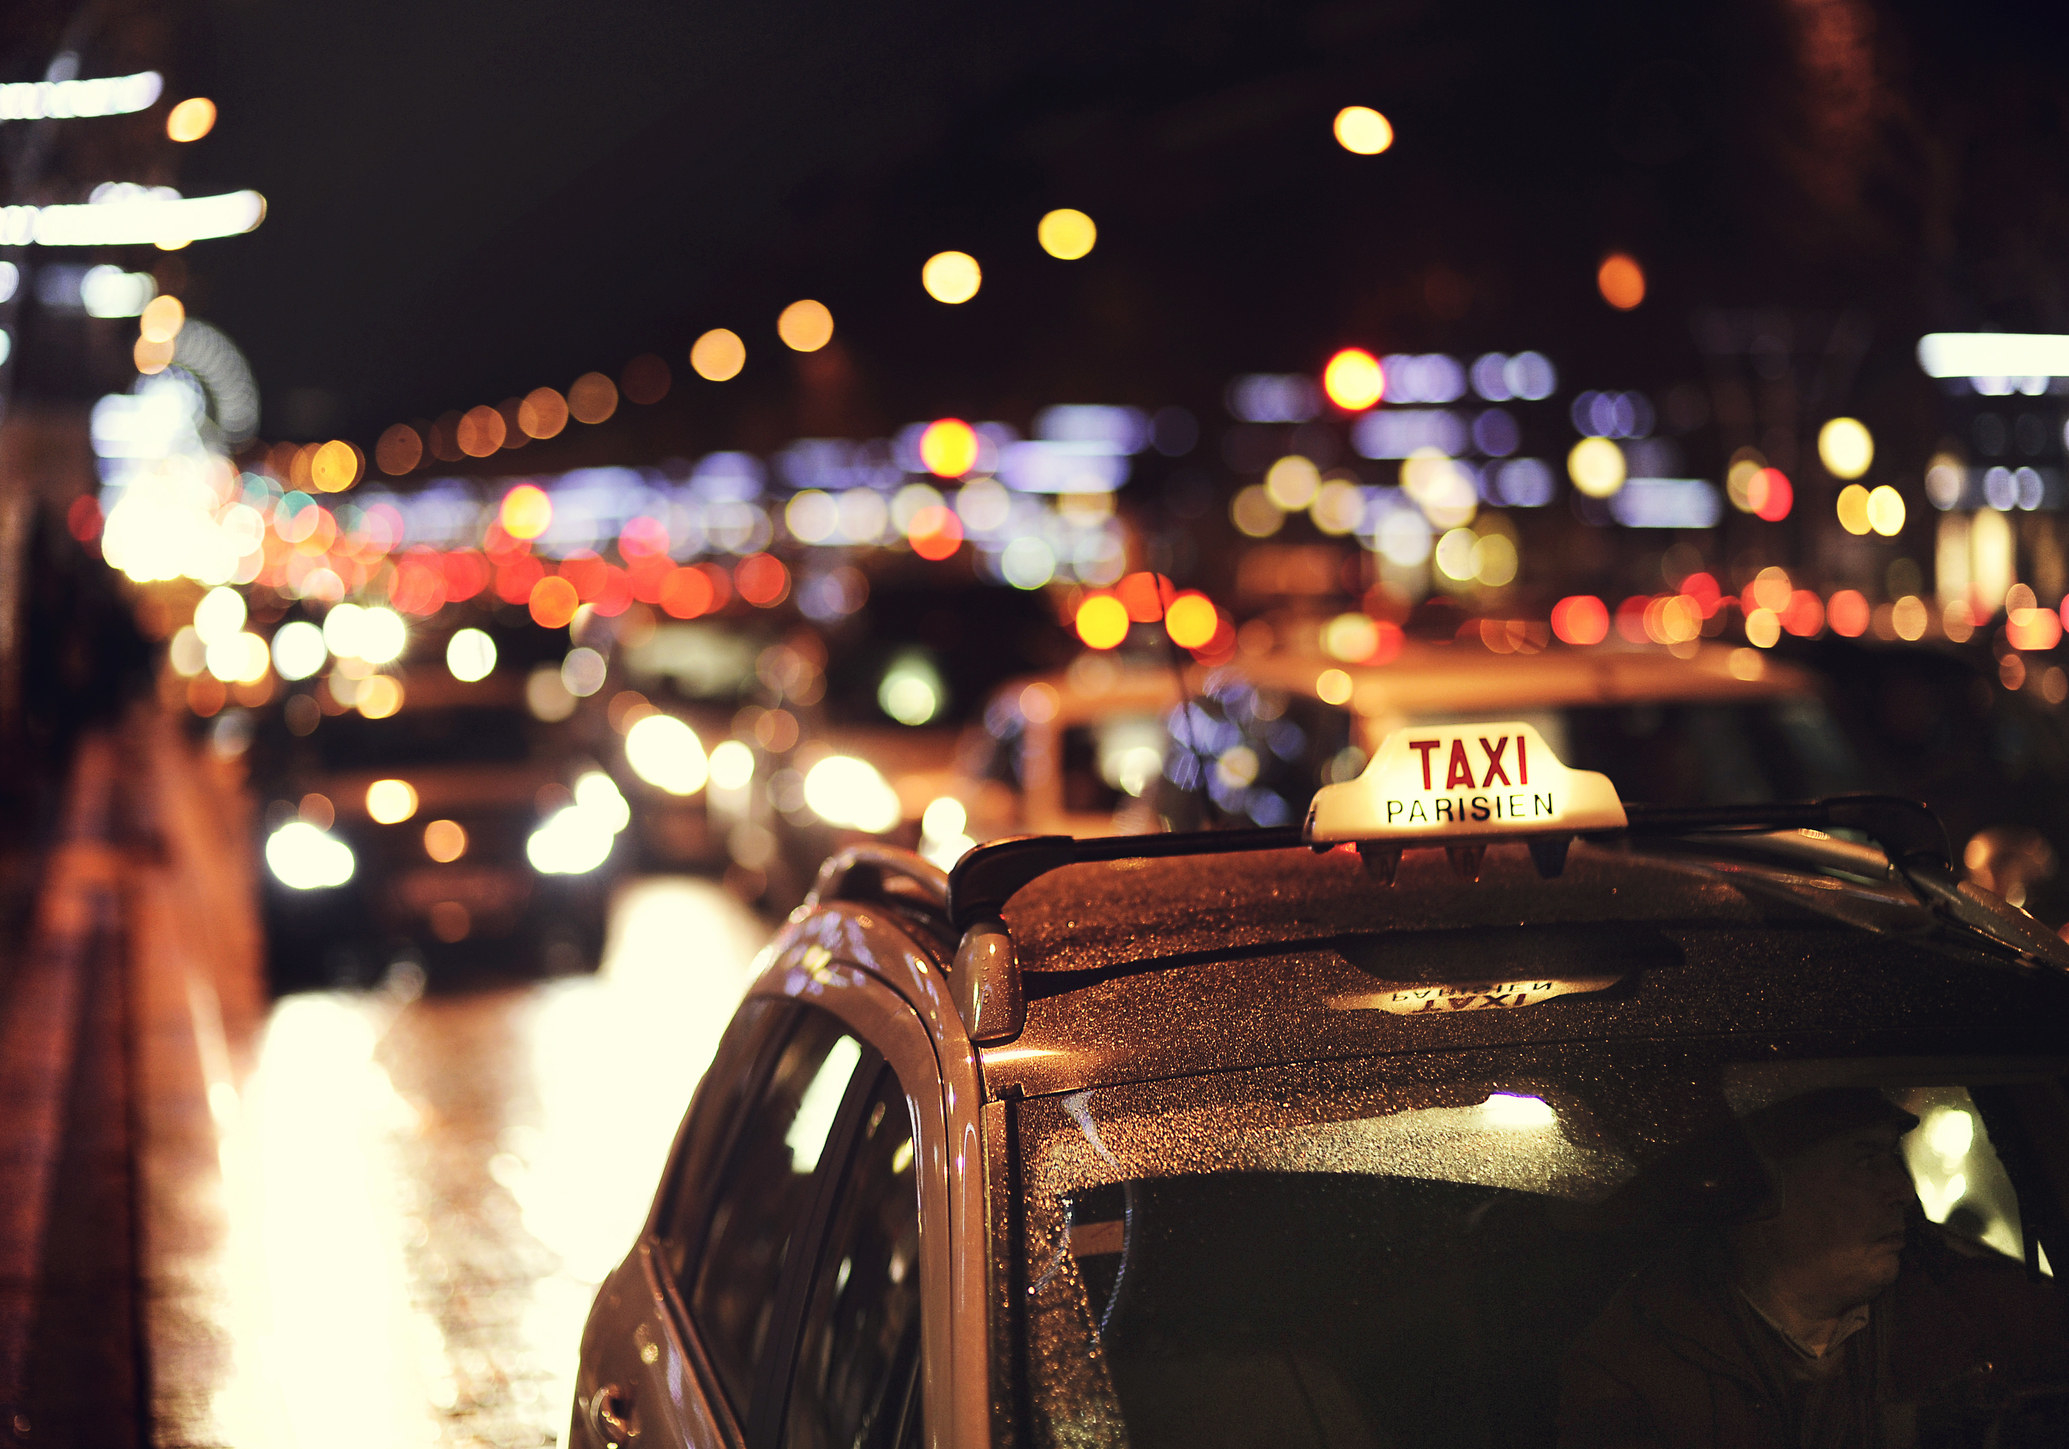 A Parisian taxi at night.